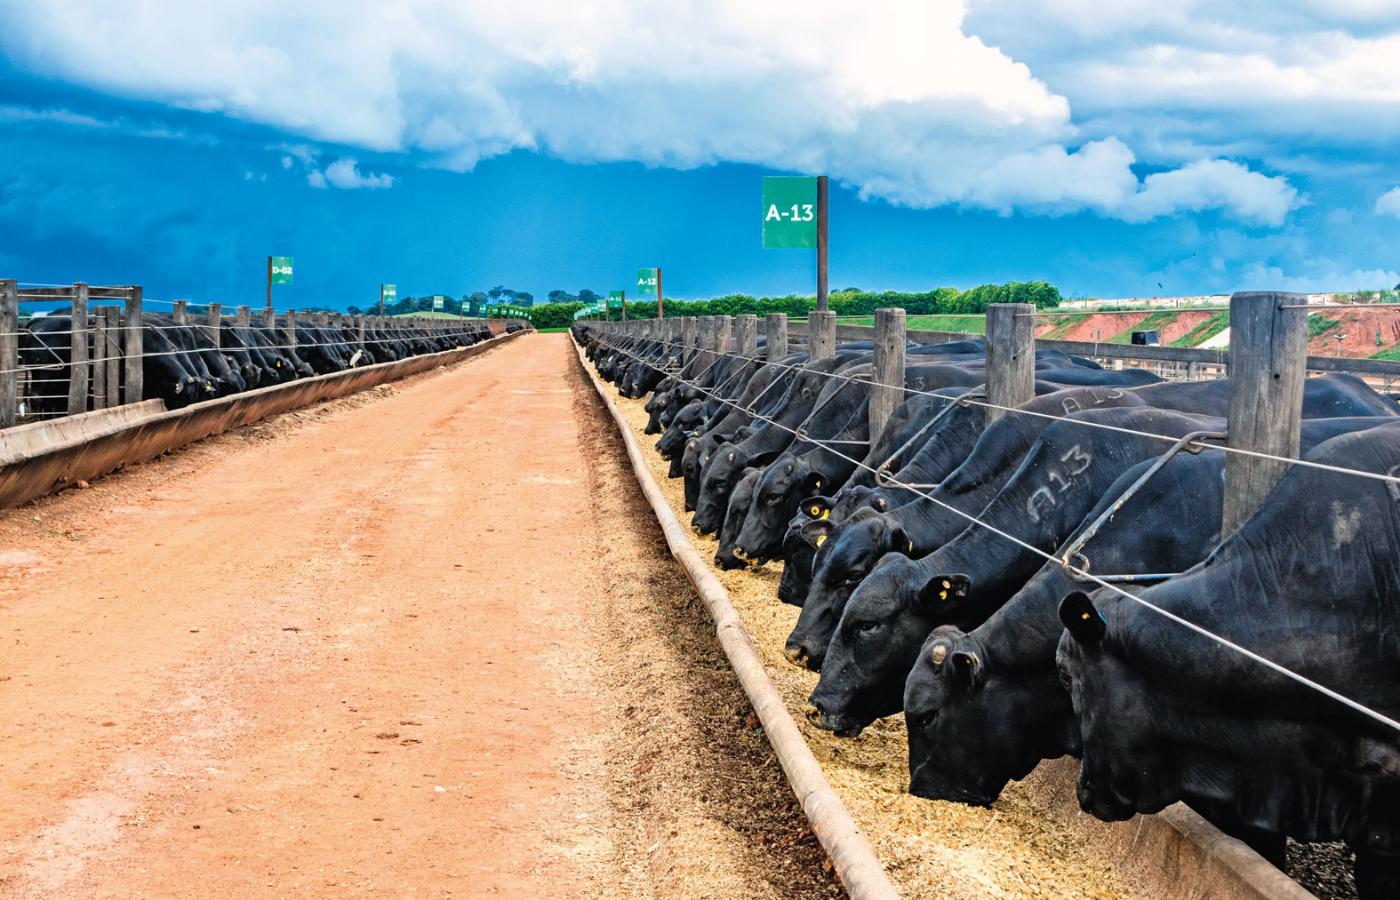 Produkcja mięsa i mleka odpowiada za 15 proc. globalnej emisji gazów cieplarnianych. Na fot. przemysłowa farma w Brazylii.